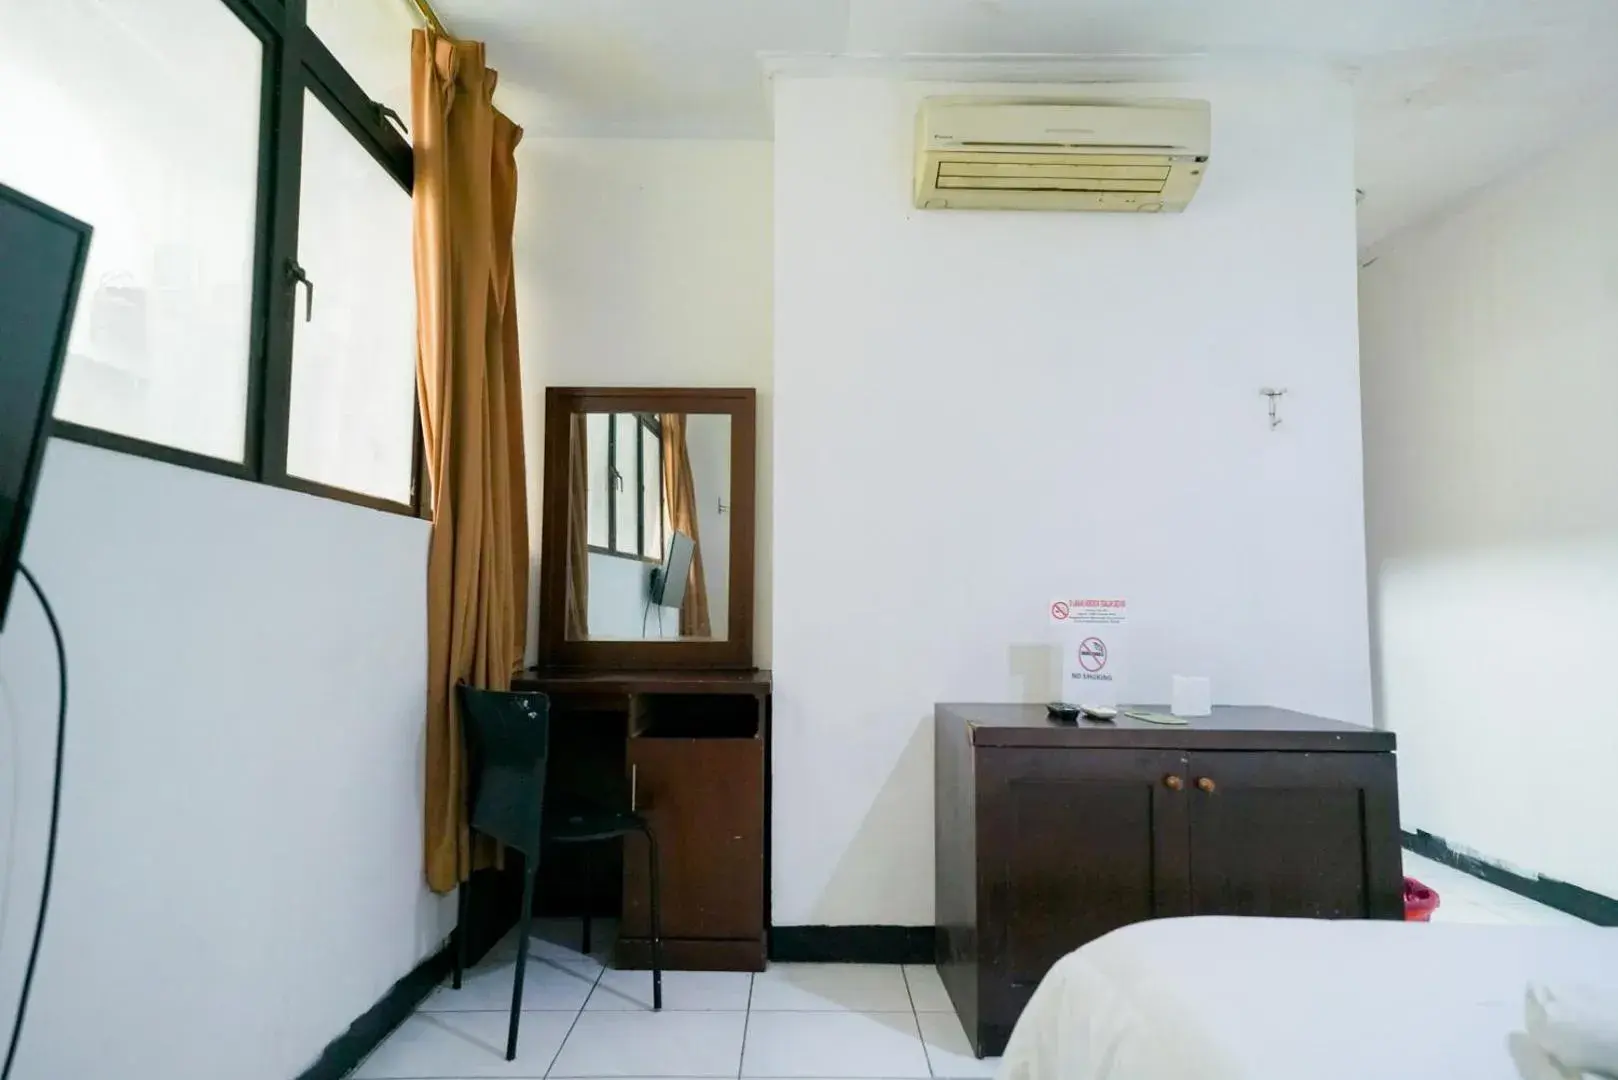 Bedroom, Bed in Urbanview Hotel Bes Mangga Besar